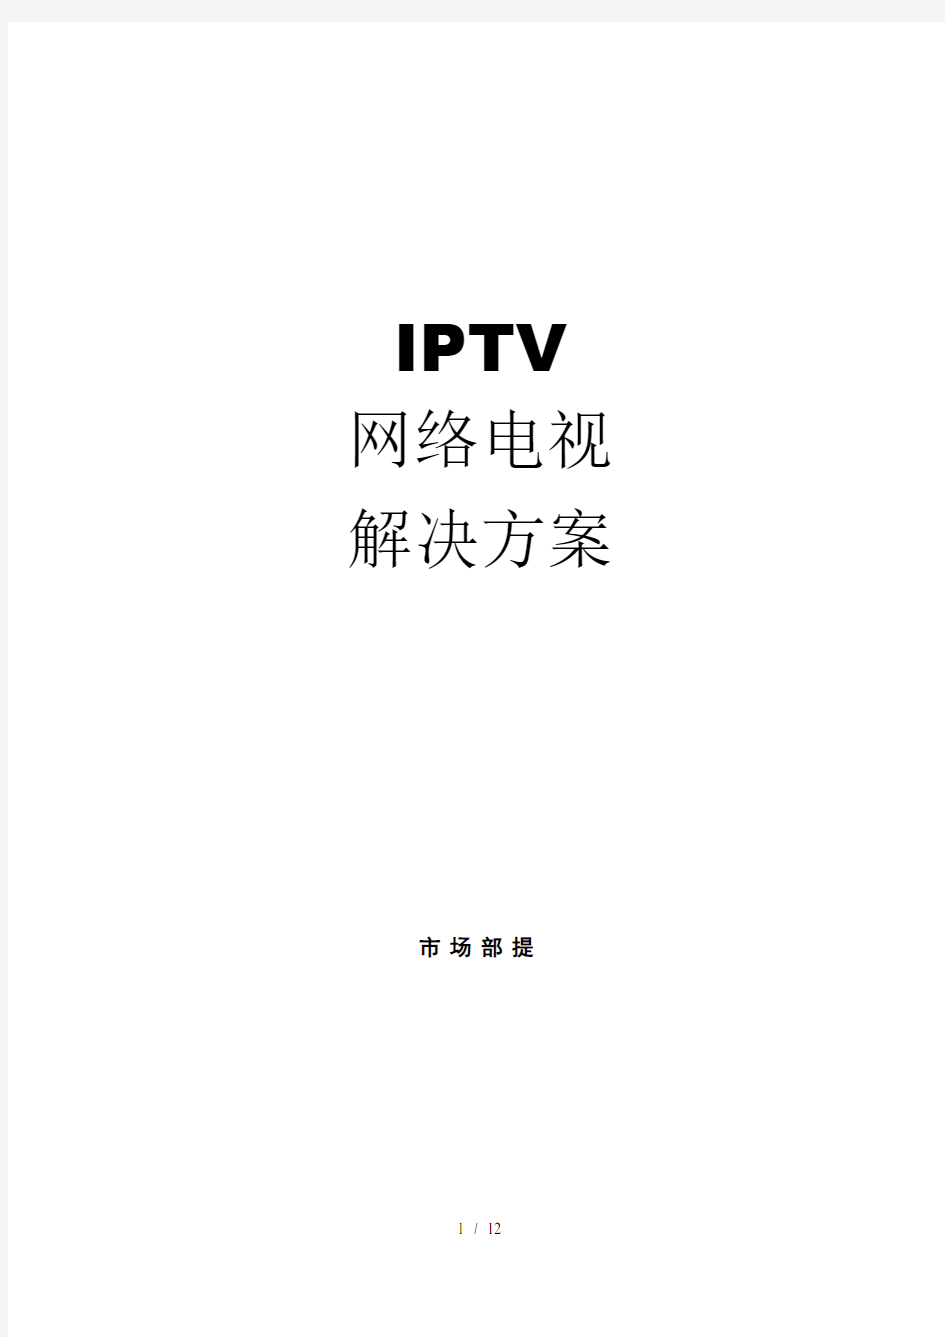 IPTV网络电视解决方案